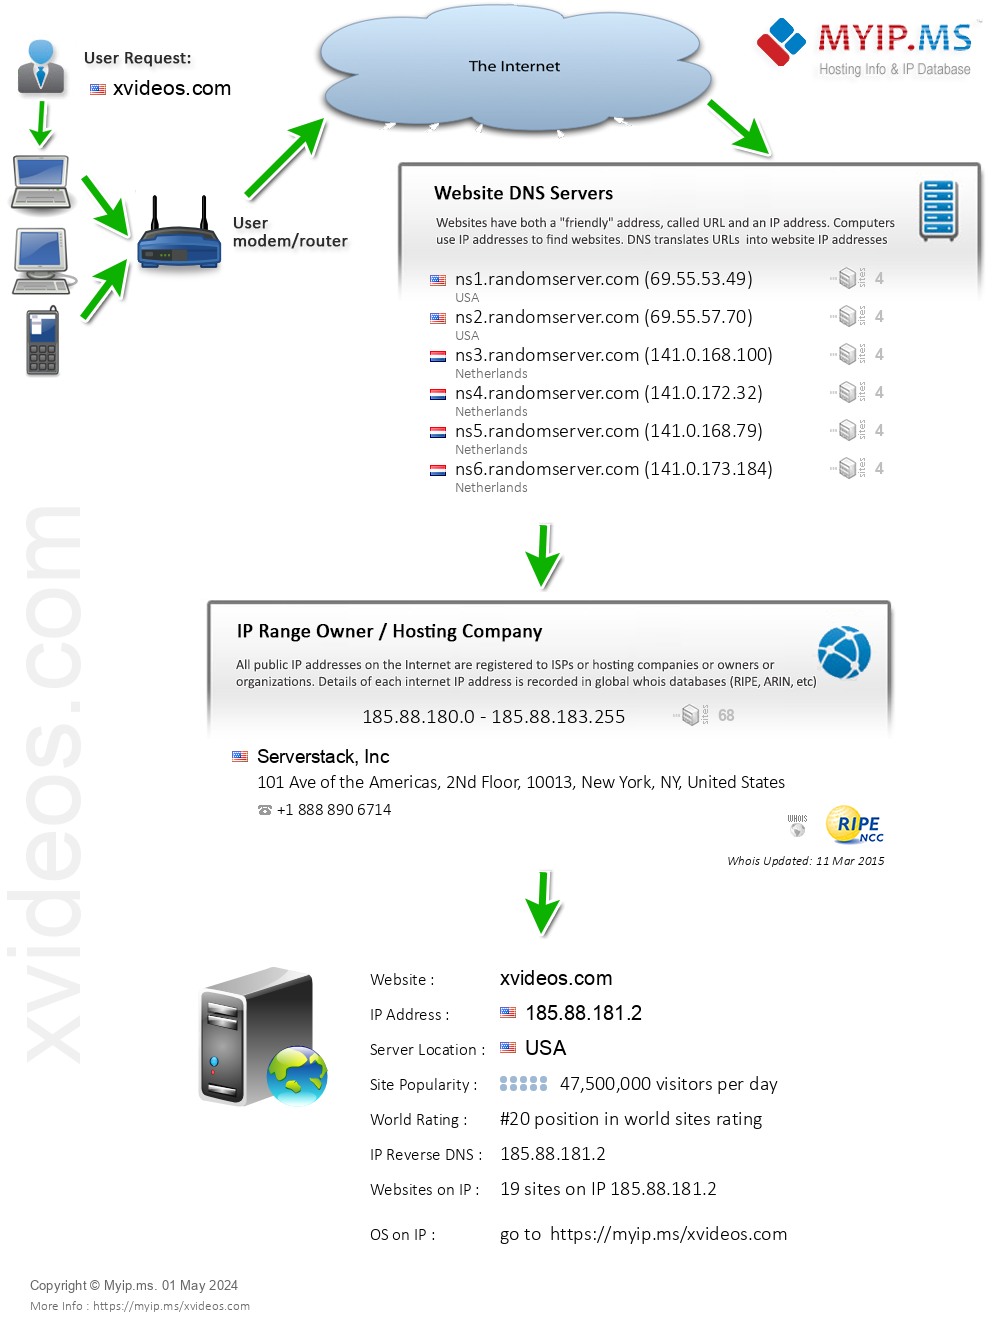 Xvideos.com - Website Hosting Visual IP Diagram